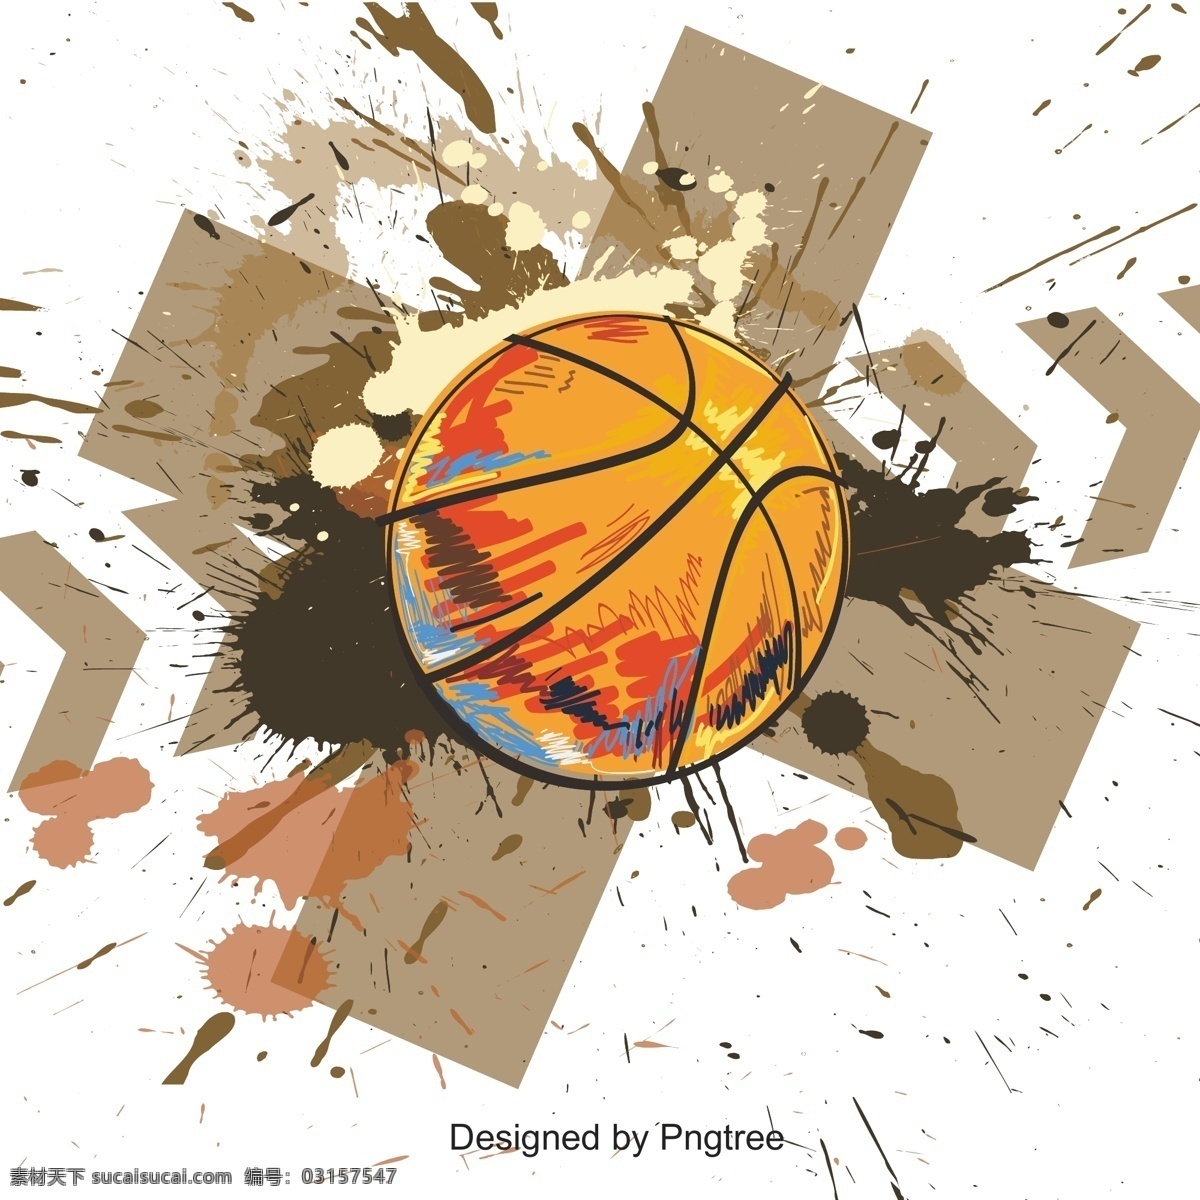 卡通 运动 非 主流 点 圆点 篮球 箭头 颜色 彩色 墨水 喷溅